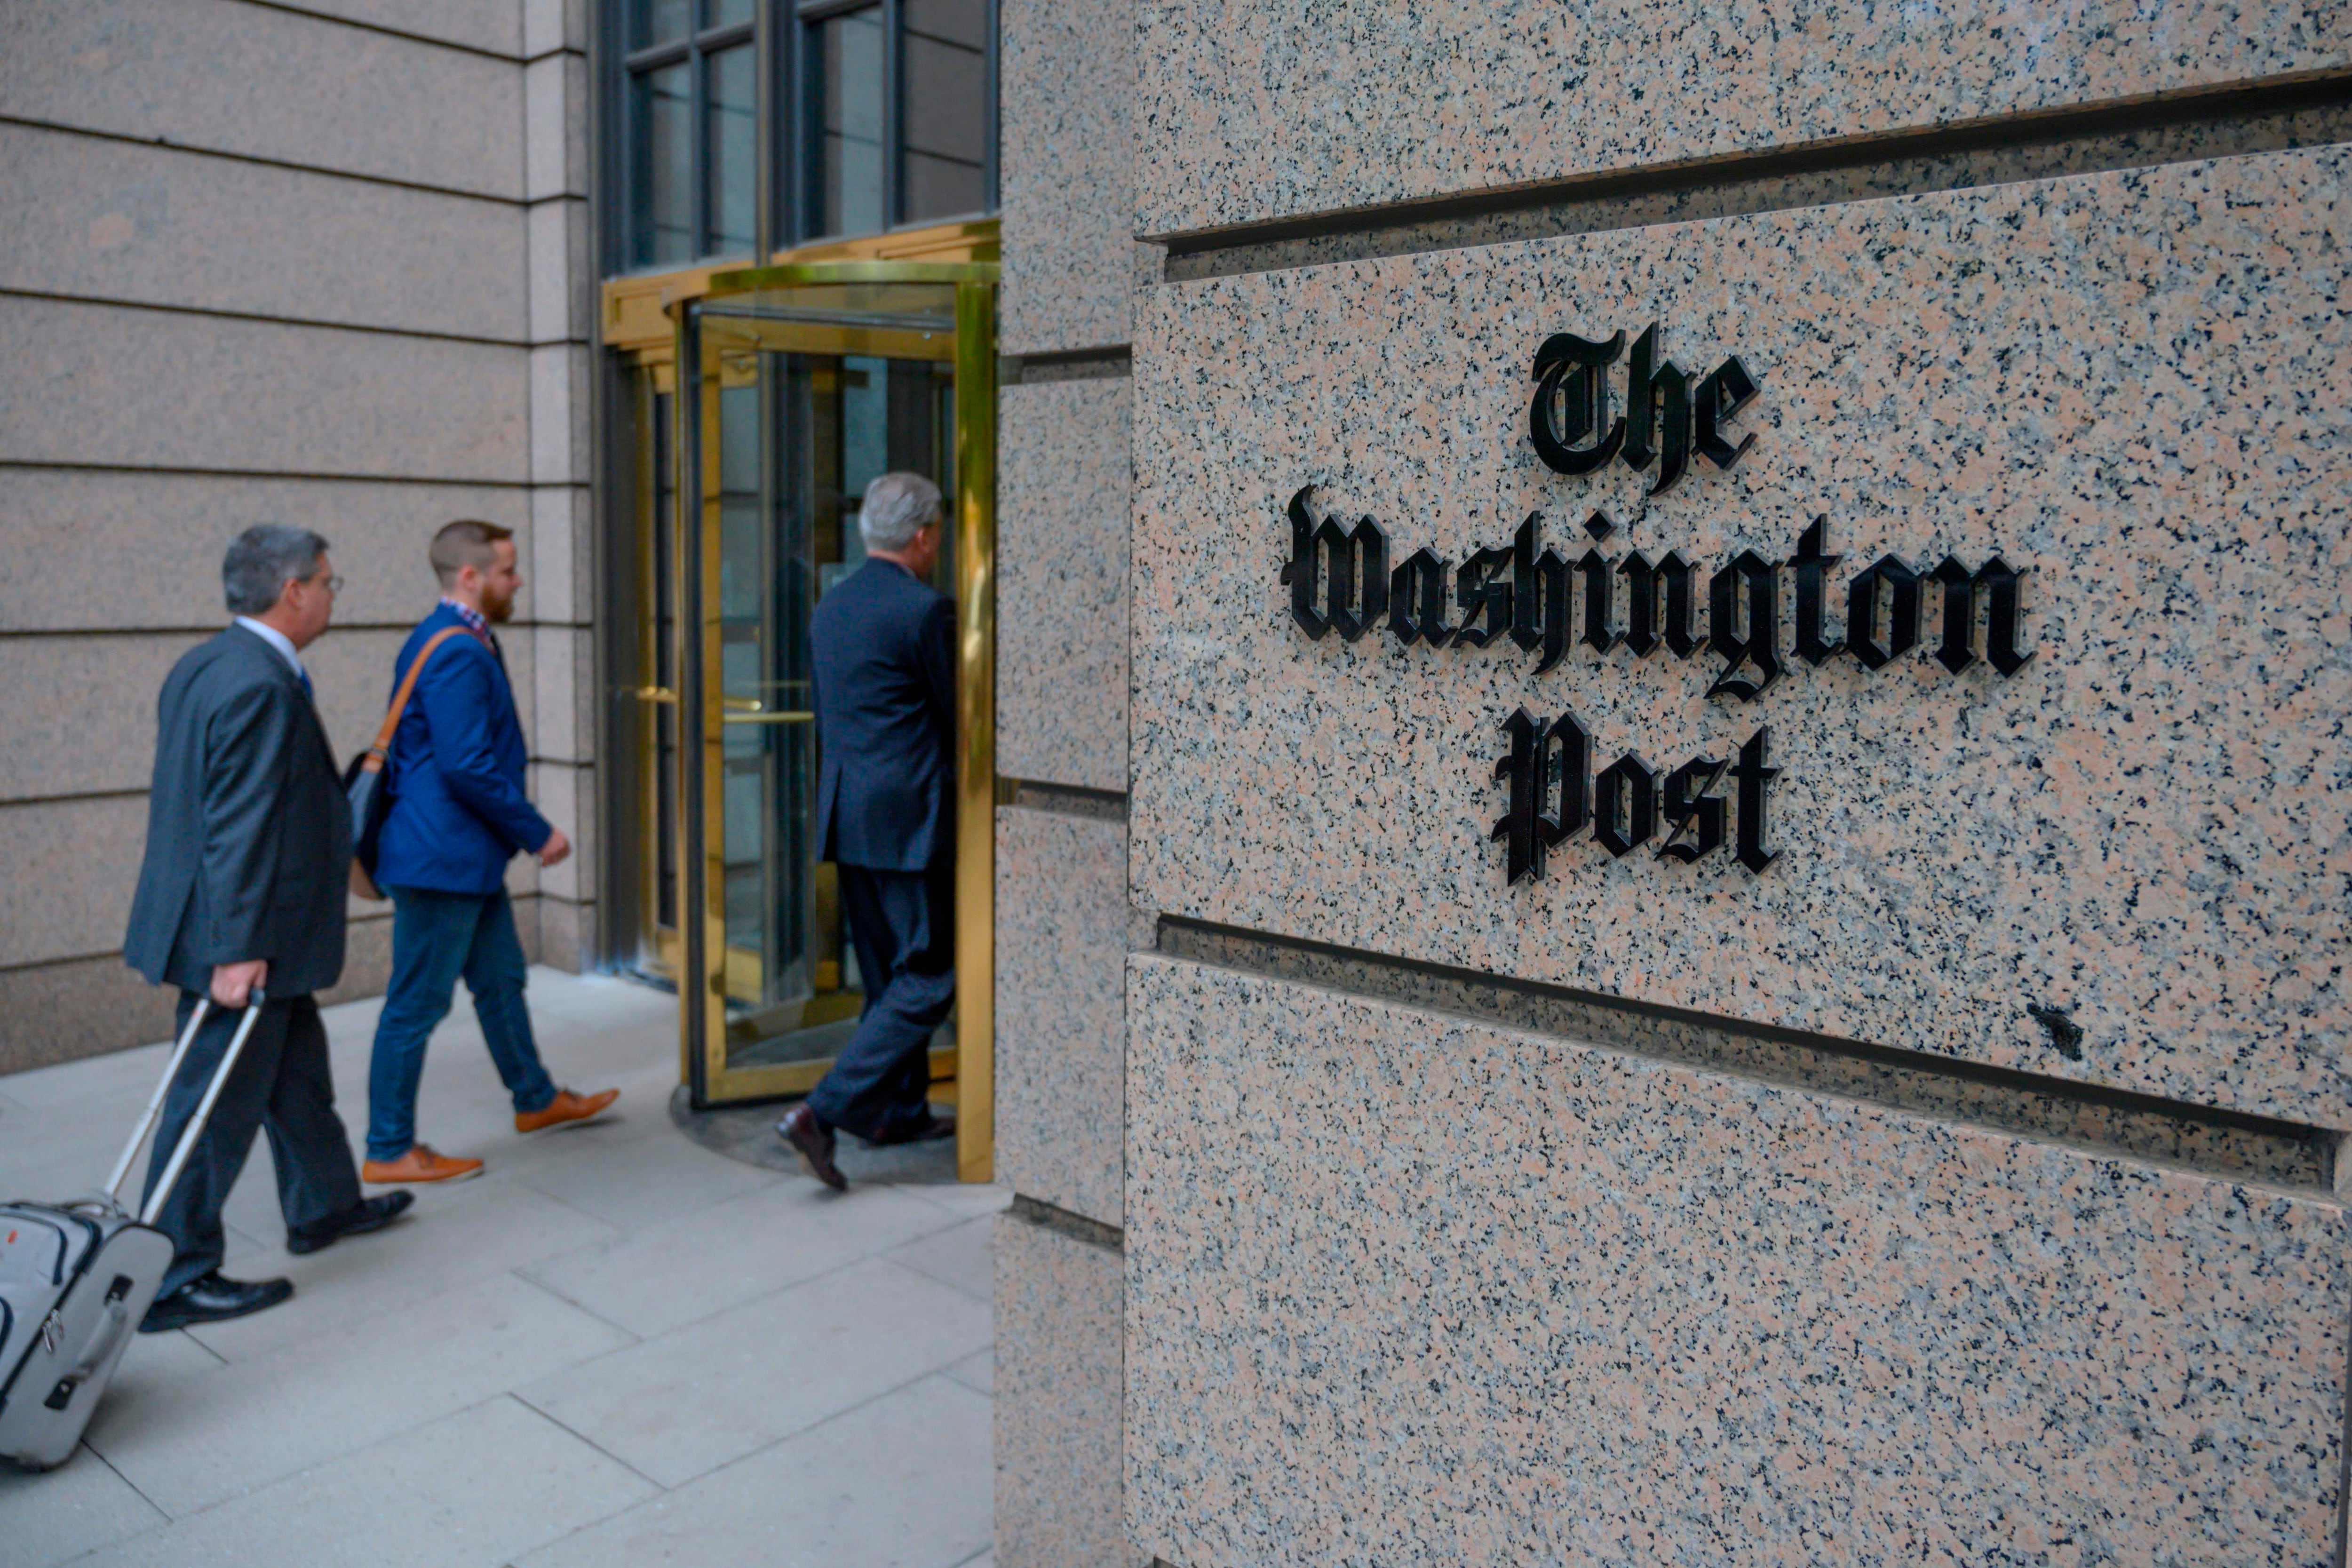 A finales de 2022, Washington Post contaba con 2,5 millones de suscriptores, frente a los 3 millones que tenía cuando Joe Biden asumió el cargo a principios de 2021.